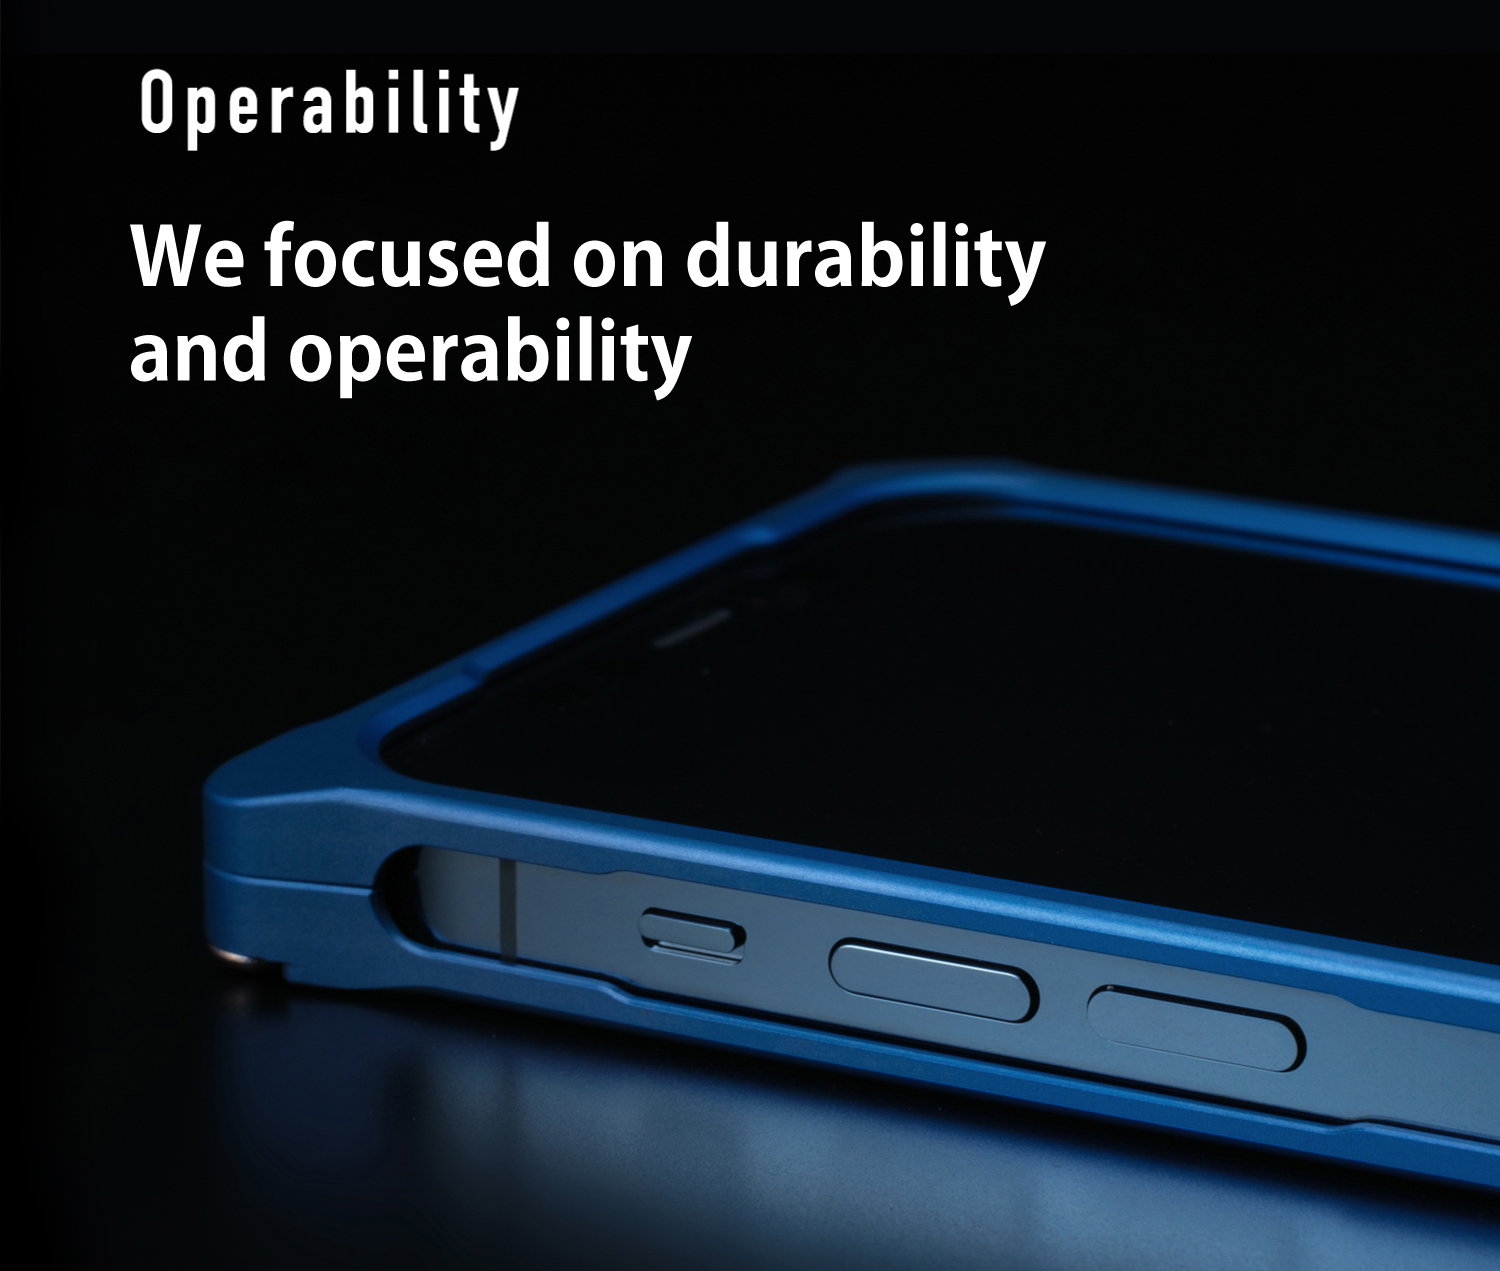 LV Blue Art iPhone 12 Mini Case by DG Design - Pixels